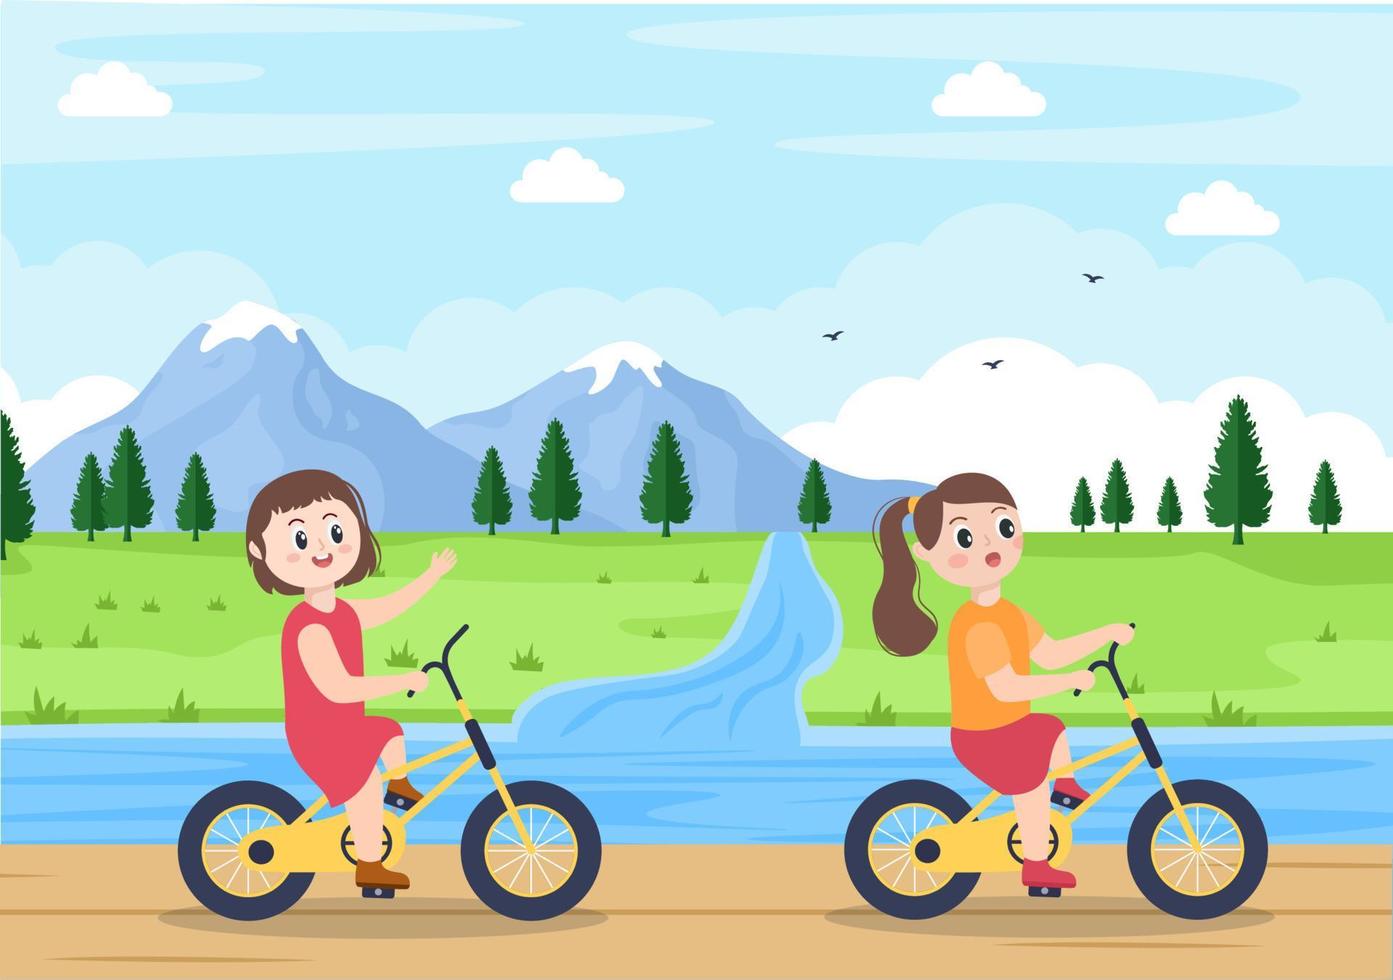 illustrazione piana di vettore di bicicletta. le persone che vanno in bicicletta, che praticano sport e attività ricreative all'aperto sulla strada del parco o sull'autostrada stanno vivendo uno stile di vita sano